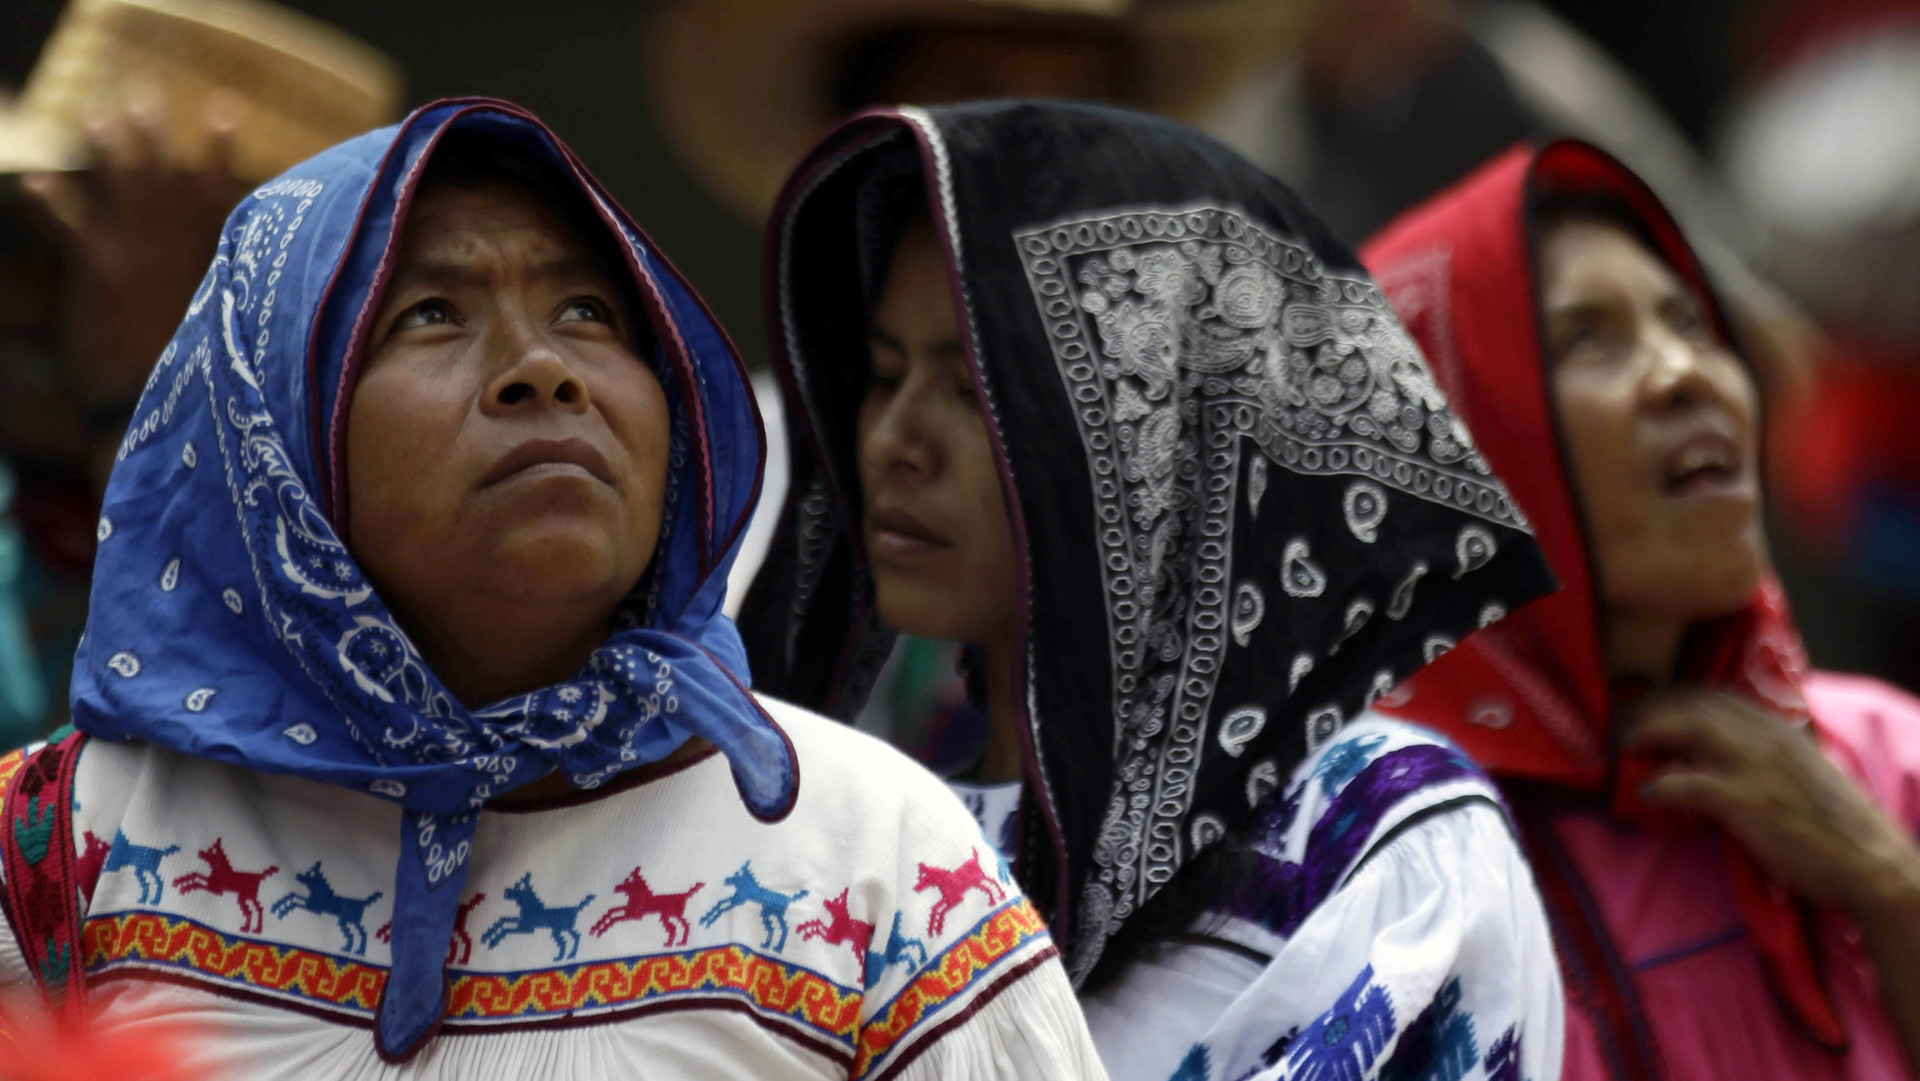 El ‘crimen’ de no hablar español tiene a más de 8.000 indígenas mexicanos en la cárcel